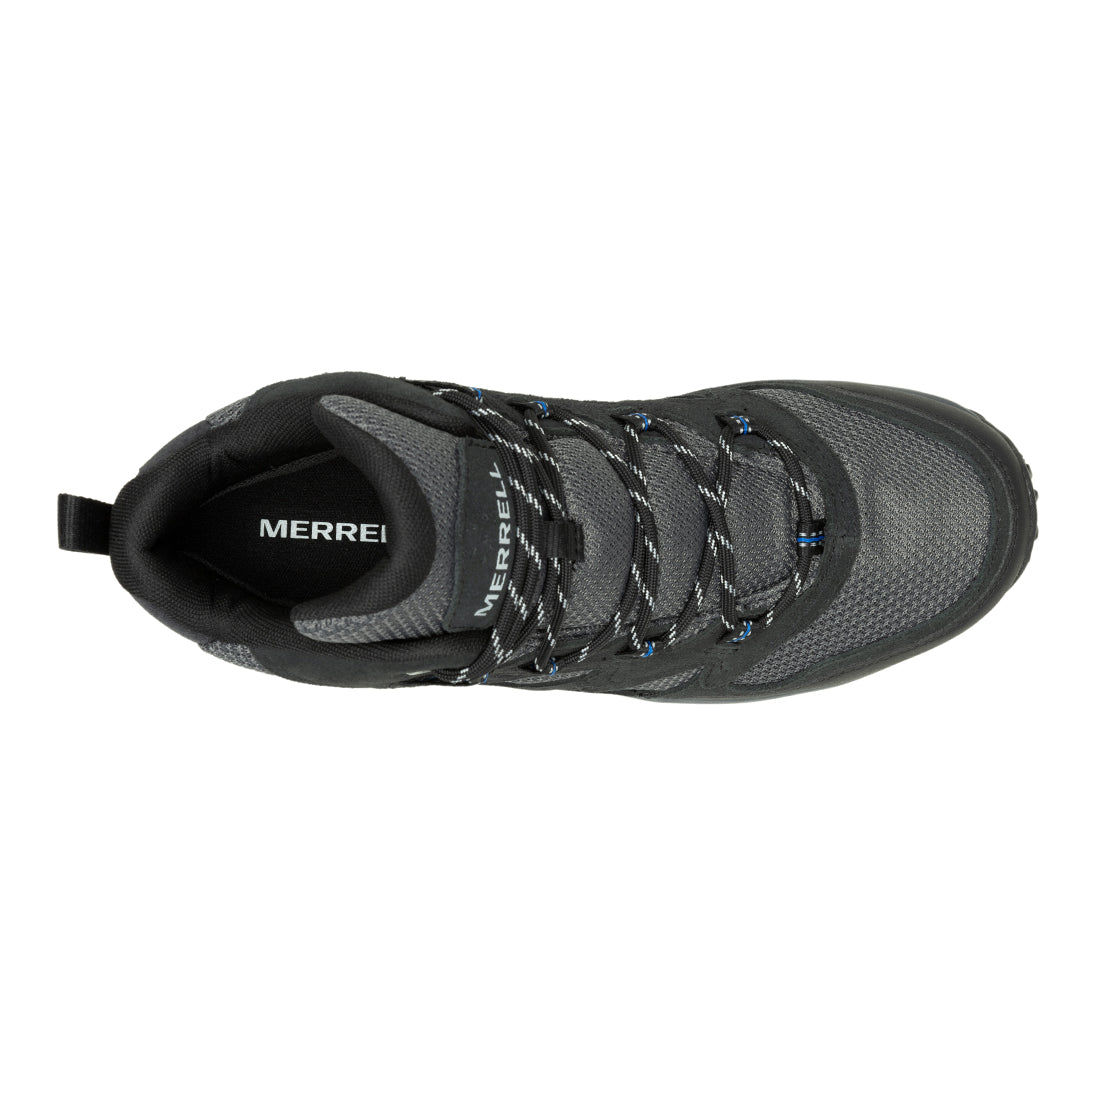 West Rim Mid Waterproof -Black/Blue Mens Hiking Shoes